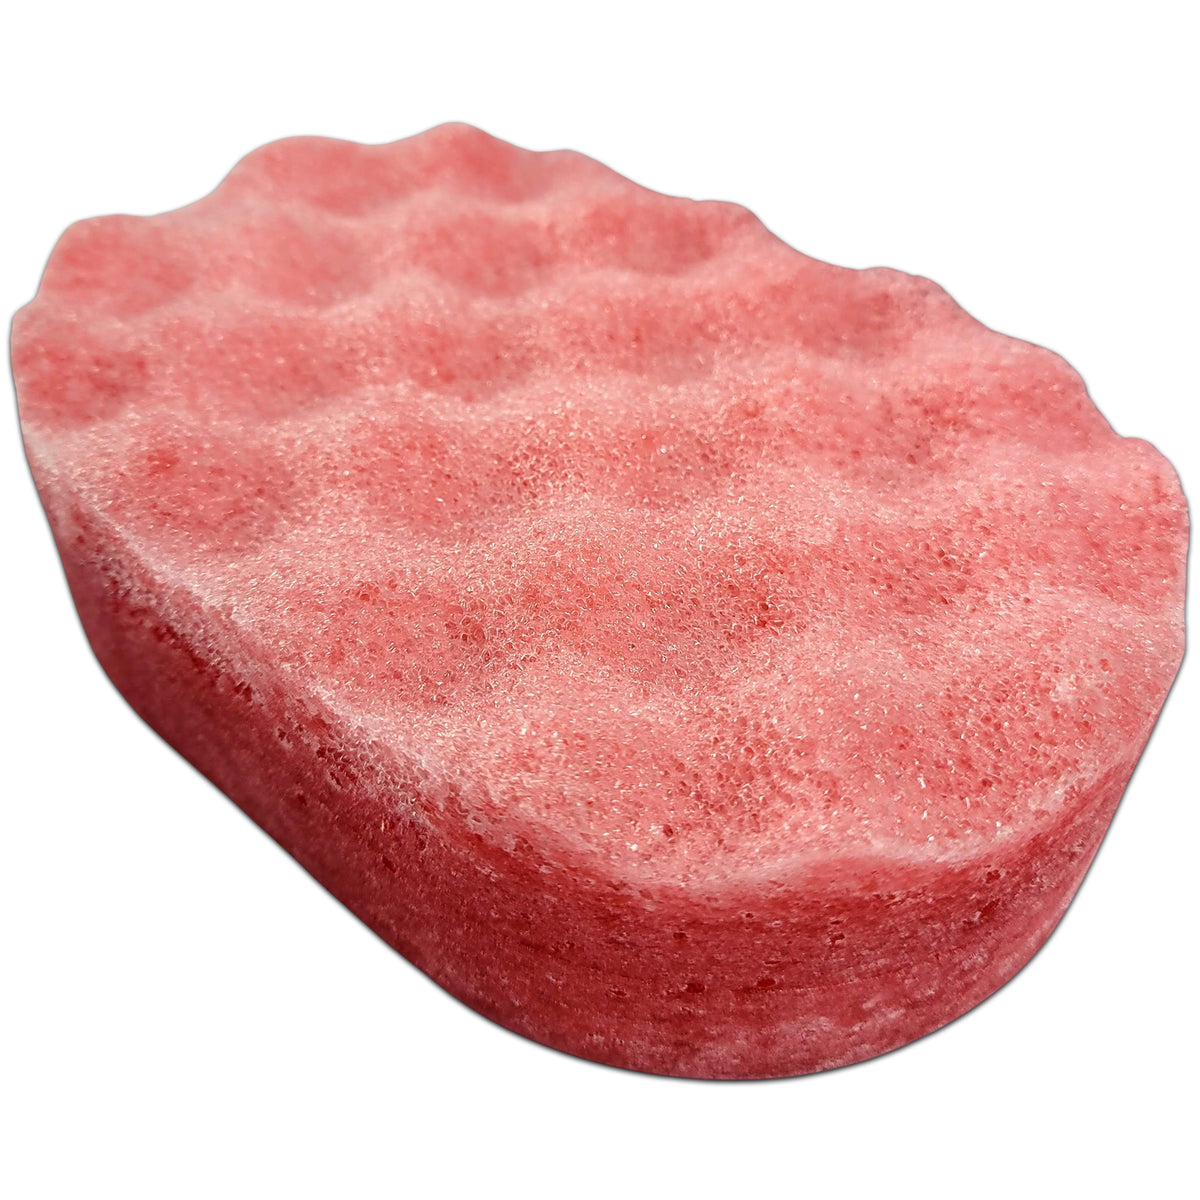 Black Cherry Soap Sponges